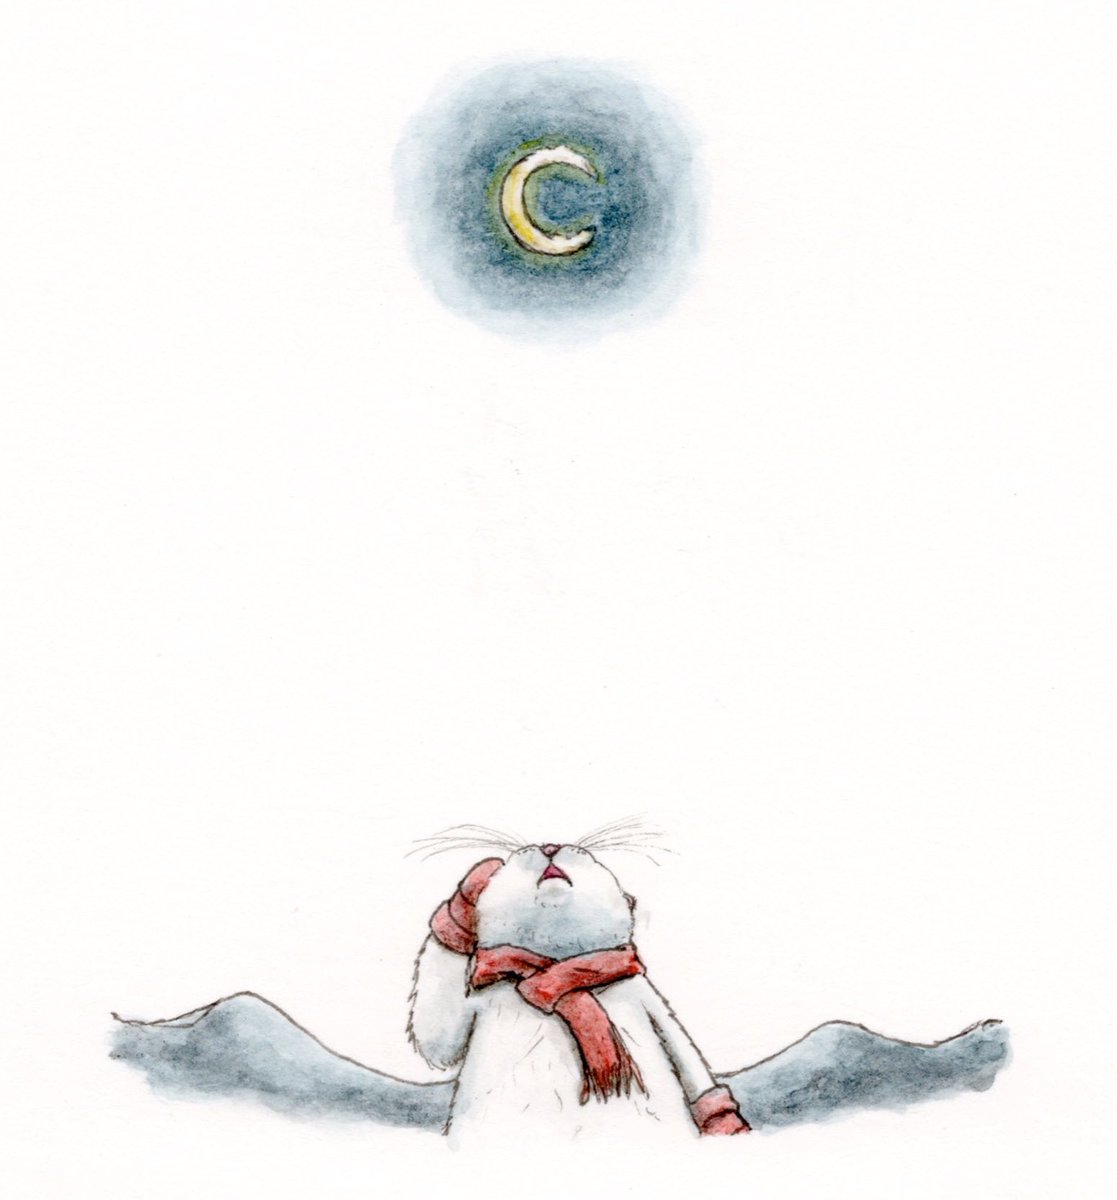 「『寒い夜は月も凍る』  この場所から見る月は 寒い夜によく凍る だから誰にも内緒」|エルクポットの動物群像絵🐾のイラスト